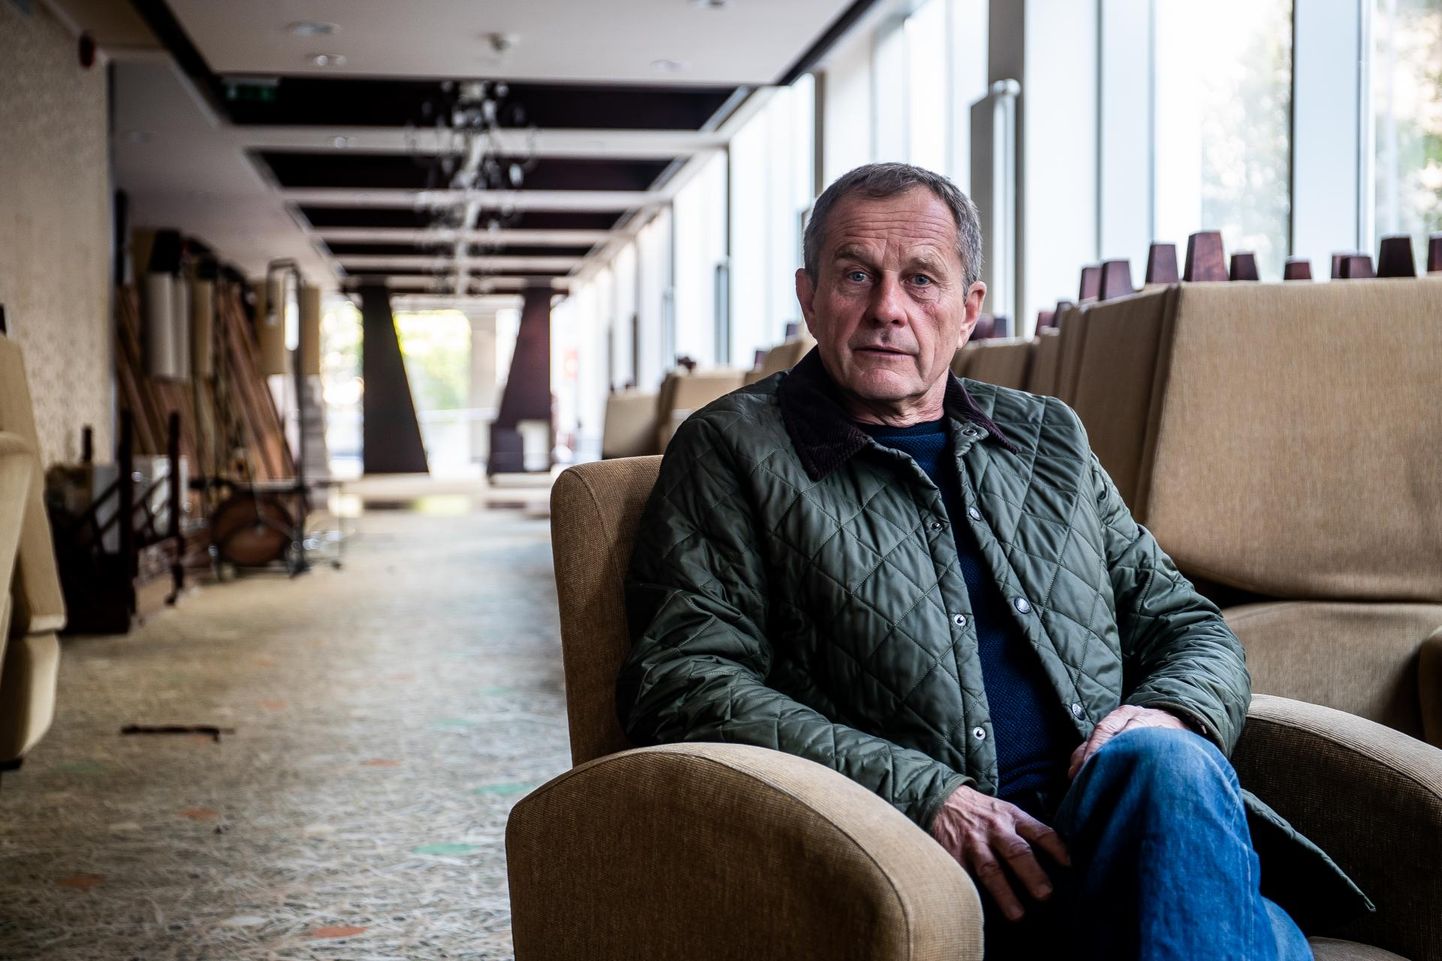 Nordic Hotel Forumi tegevjuht Felix Mägus oma valduste fuajees, kus hunnikutes vana mööbel ja muu sisustus ootab minema vedamist.